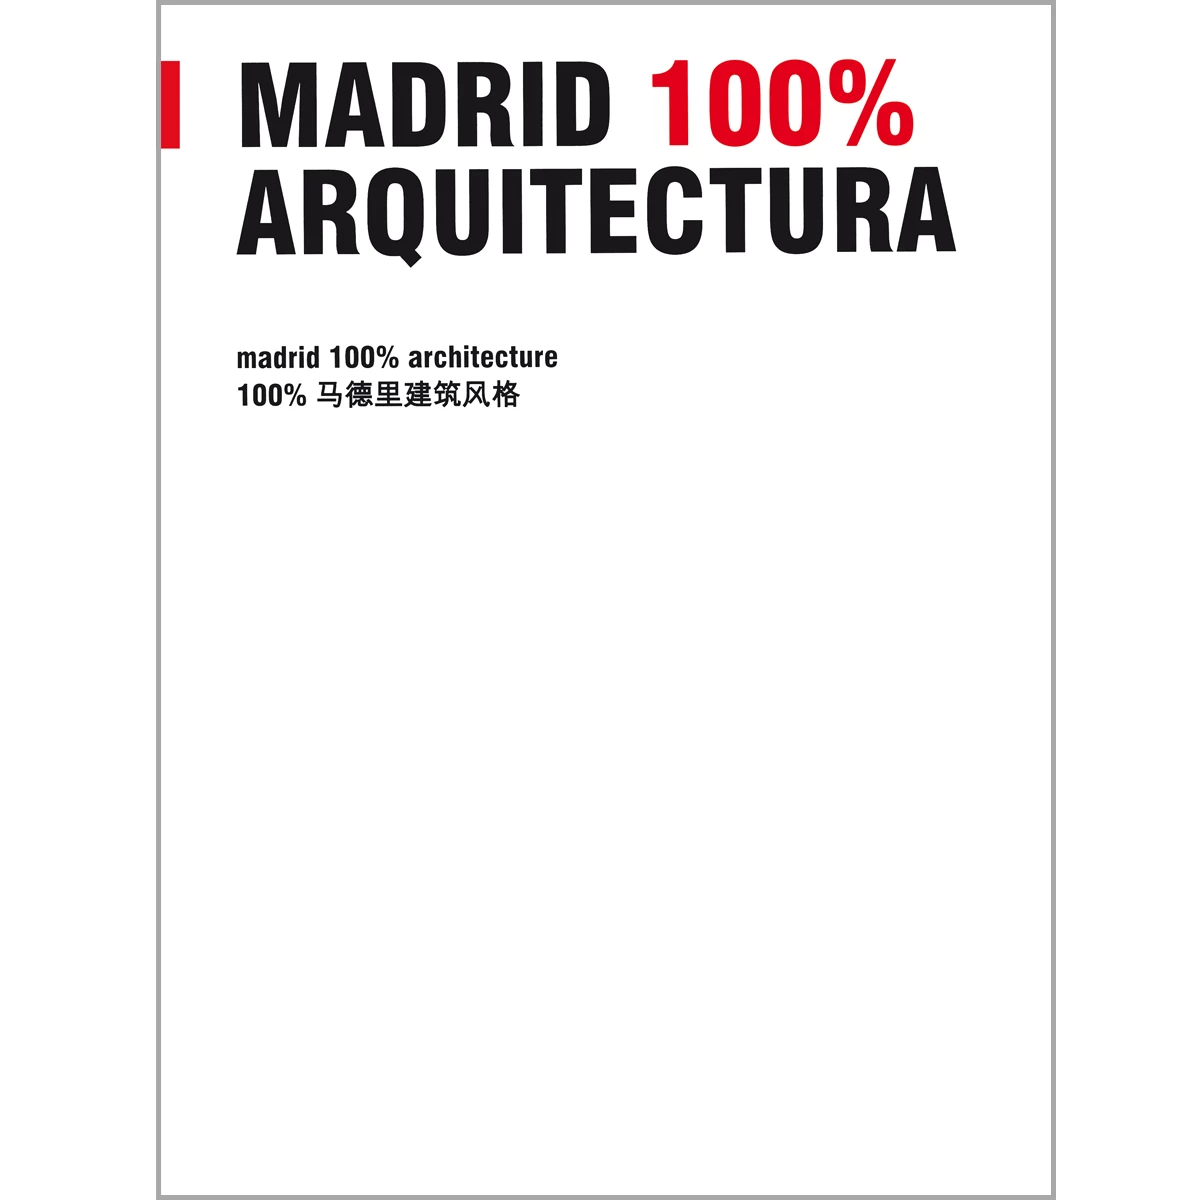 Madrid 100% Arquitectura